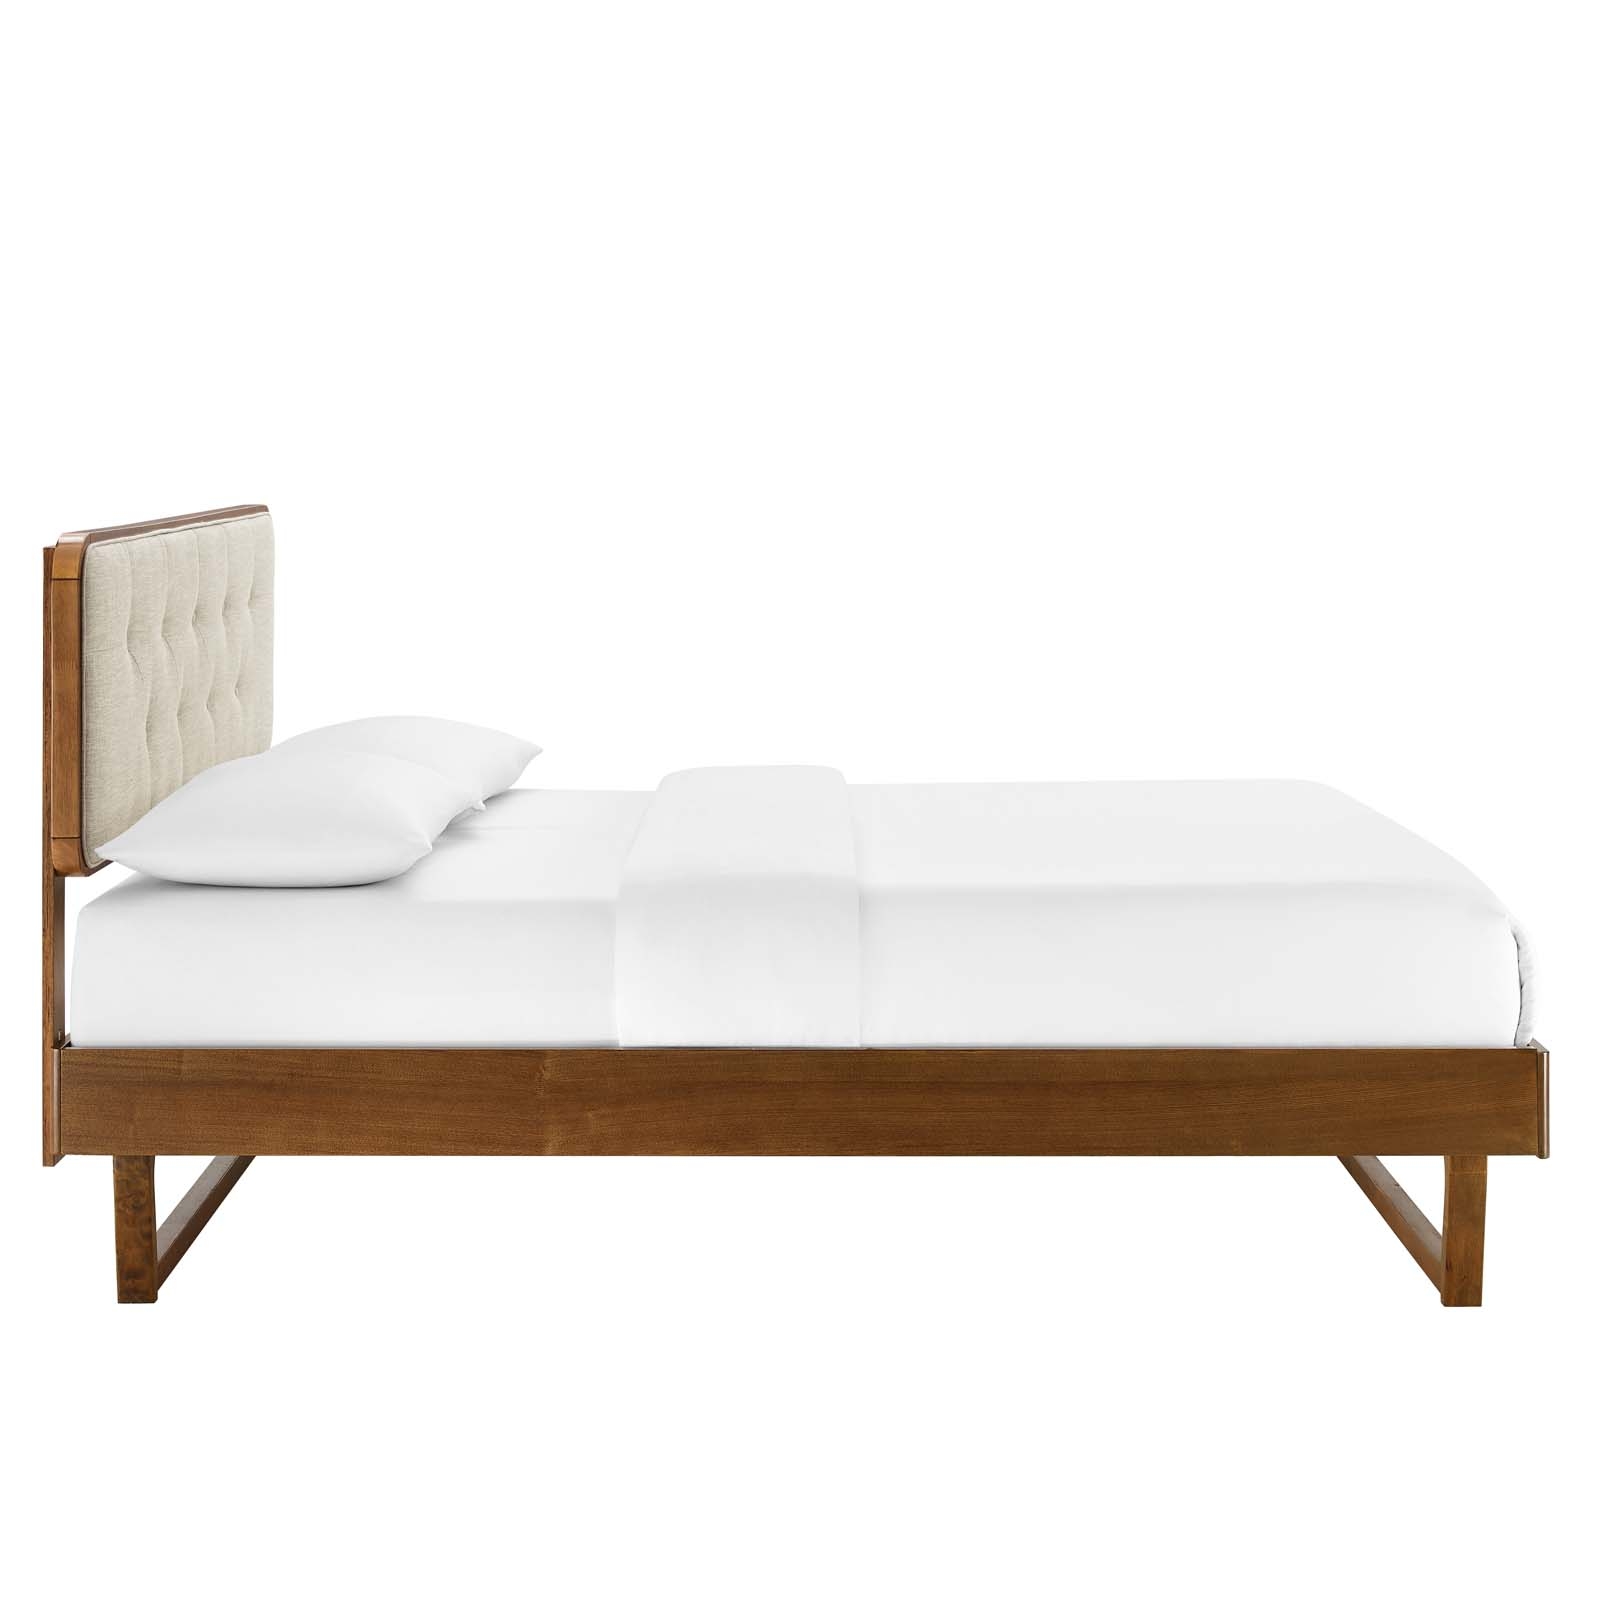 Bridgette King Wood Platform Bed With Angular Frame, Walnut Beige